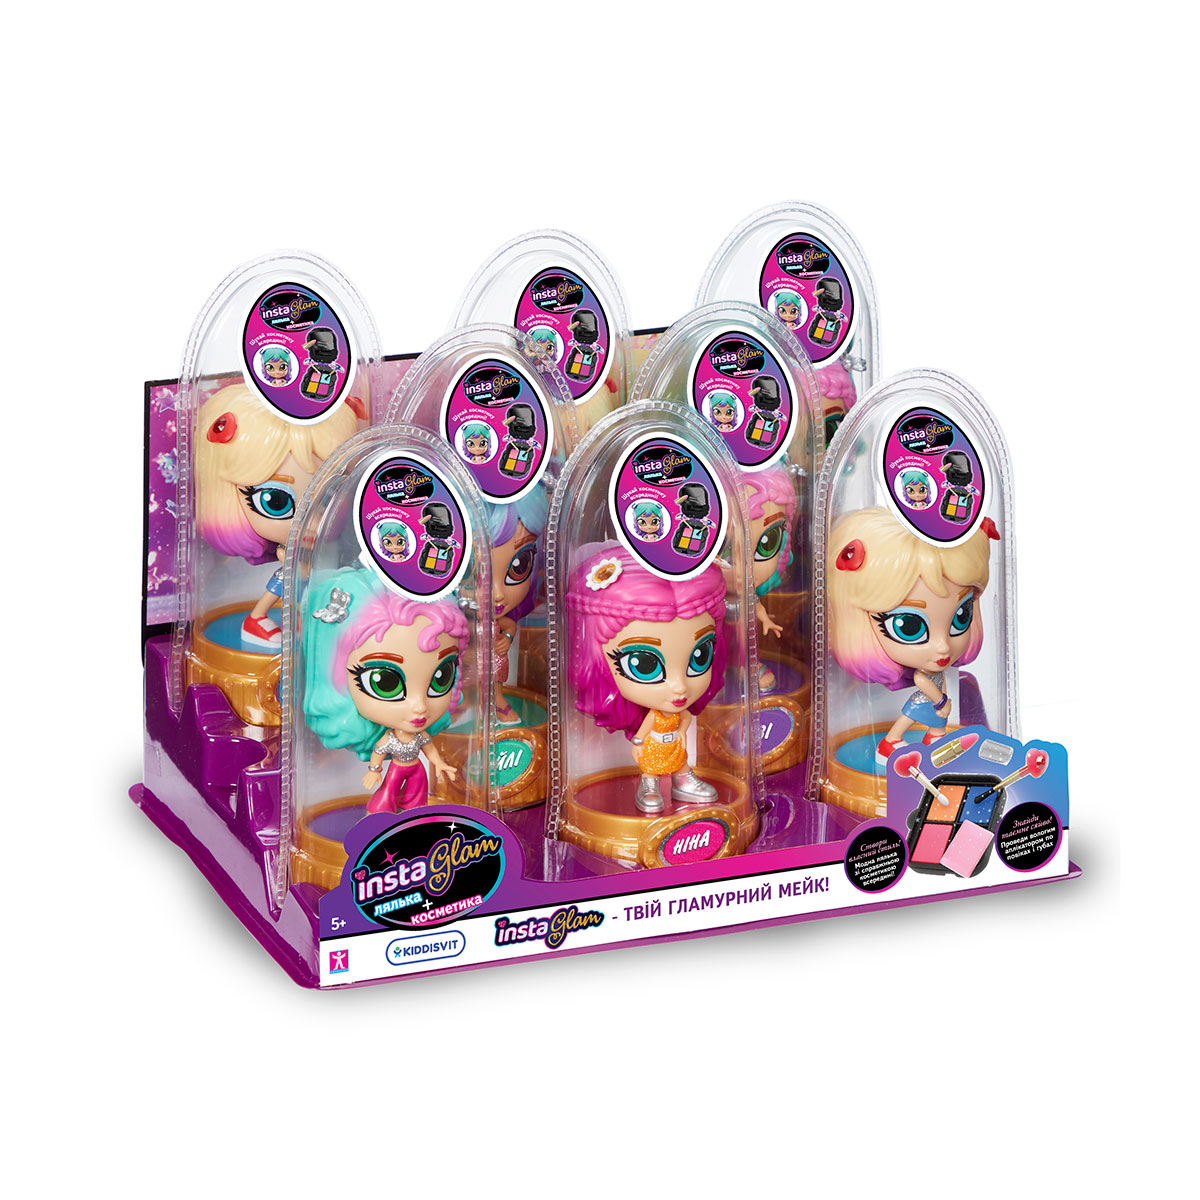 Игровой набор с куклой и косметикой 2 в 1 Instaglam S1 – ИBИ